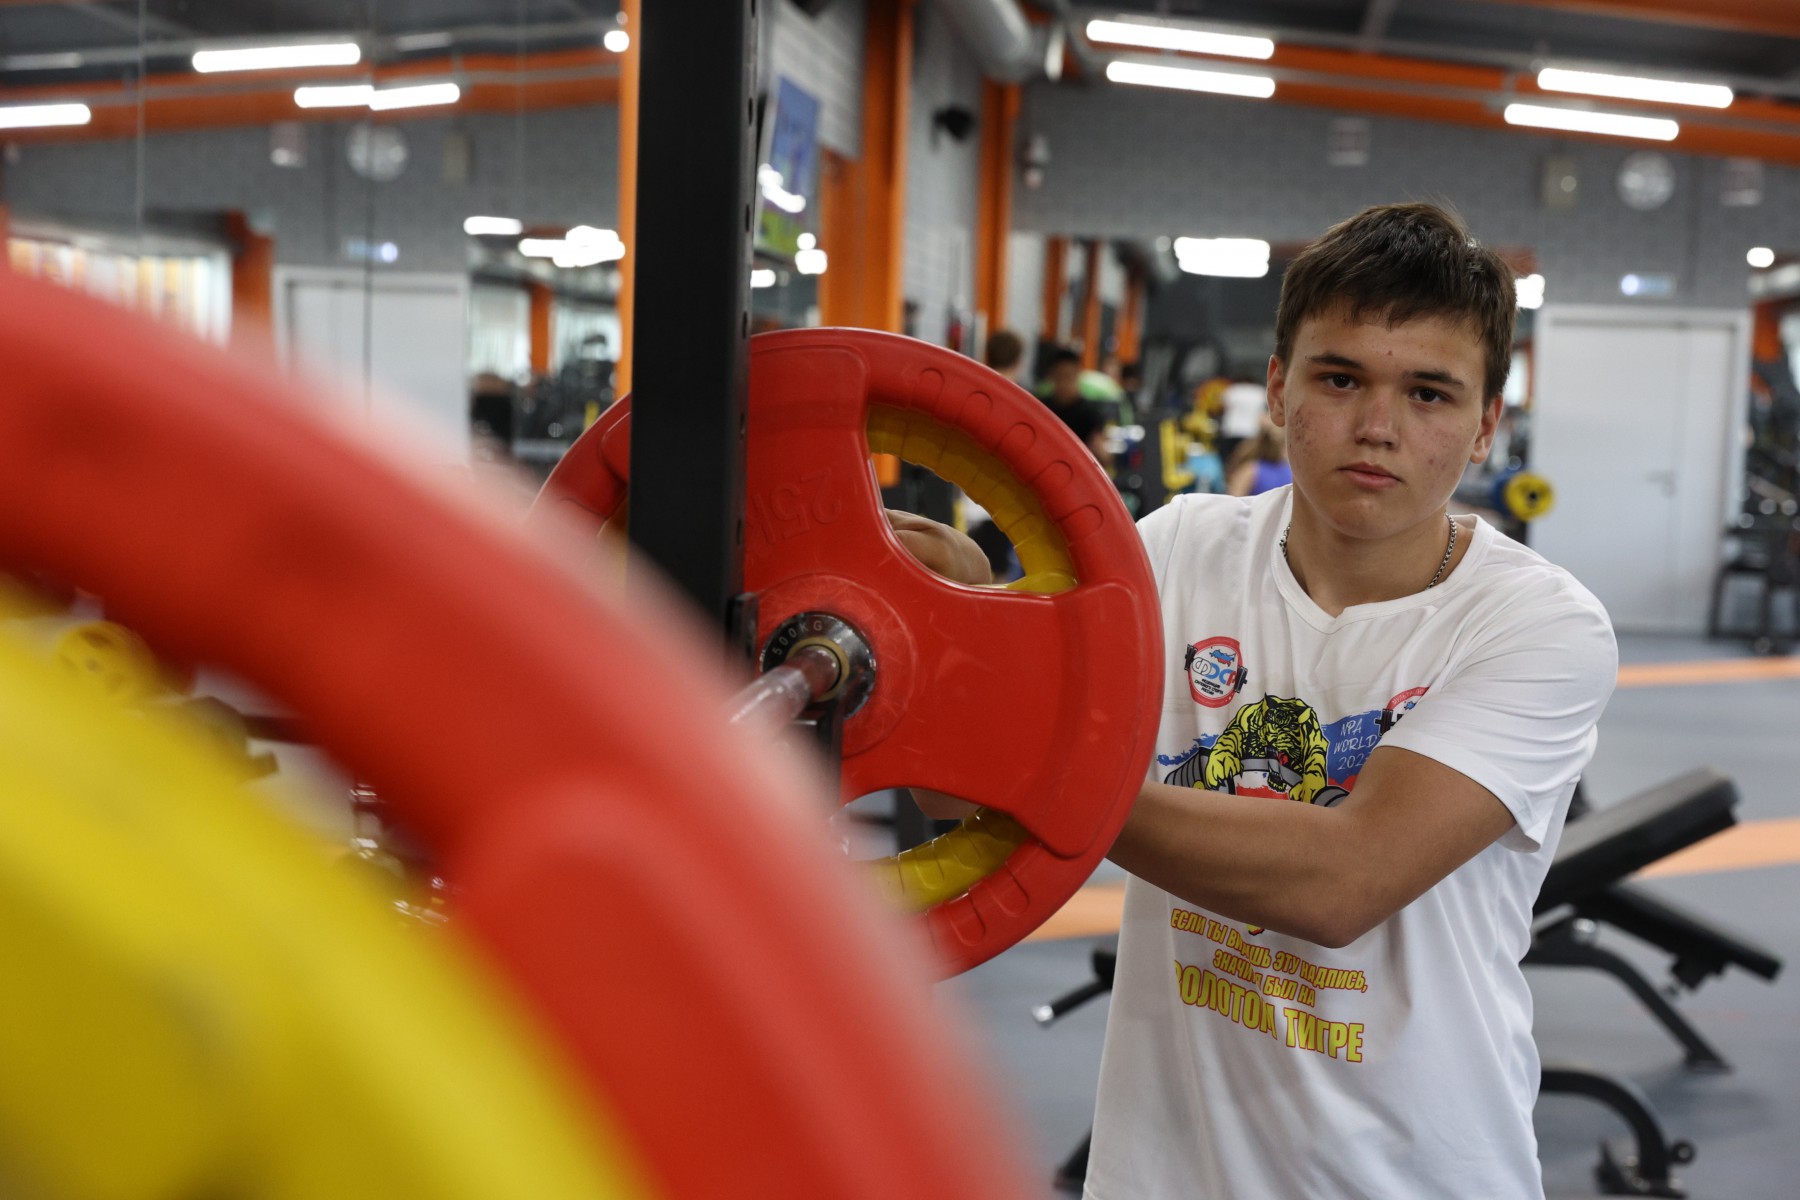 Артему Сергееву 14 лет, и он уже чемпион мира по пауэрлифтингу. Фото Владимира Коцюбы-Белых